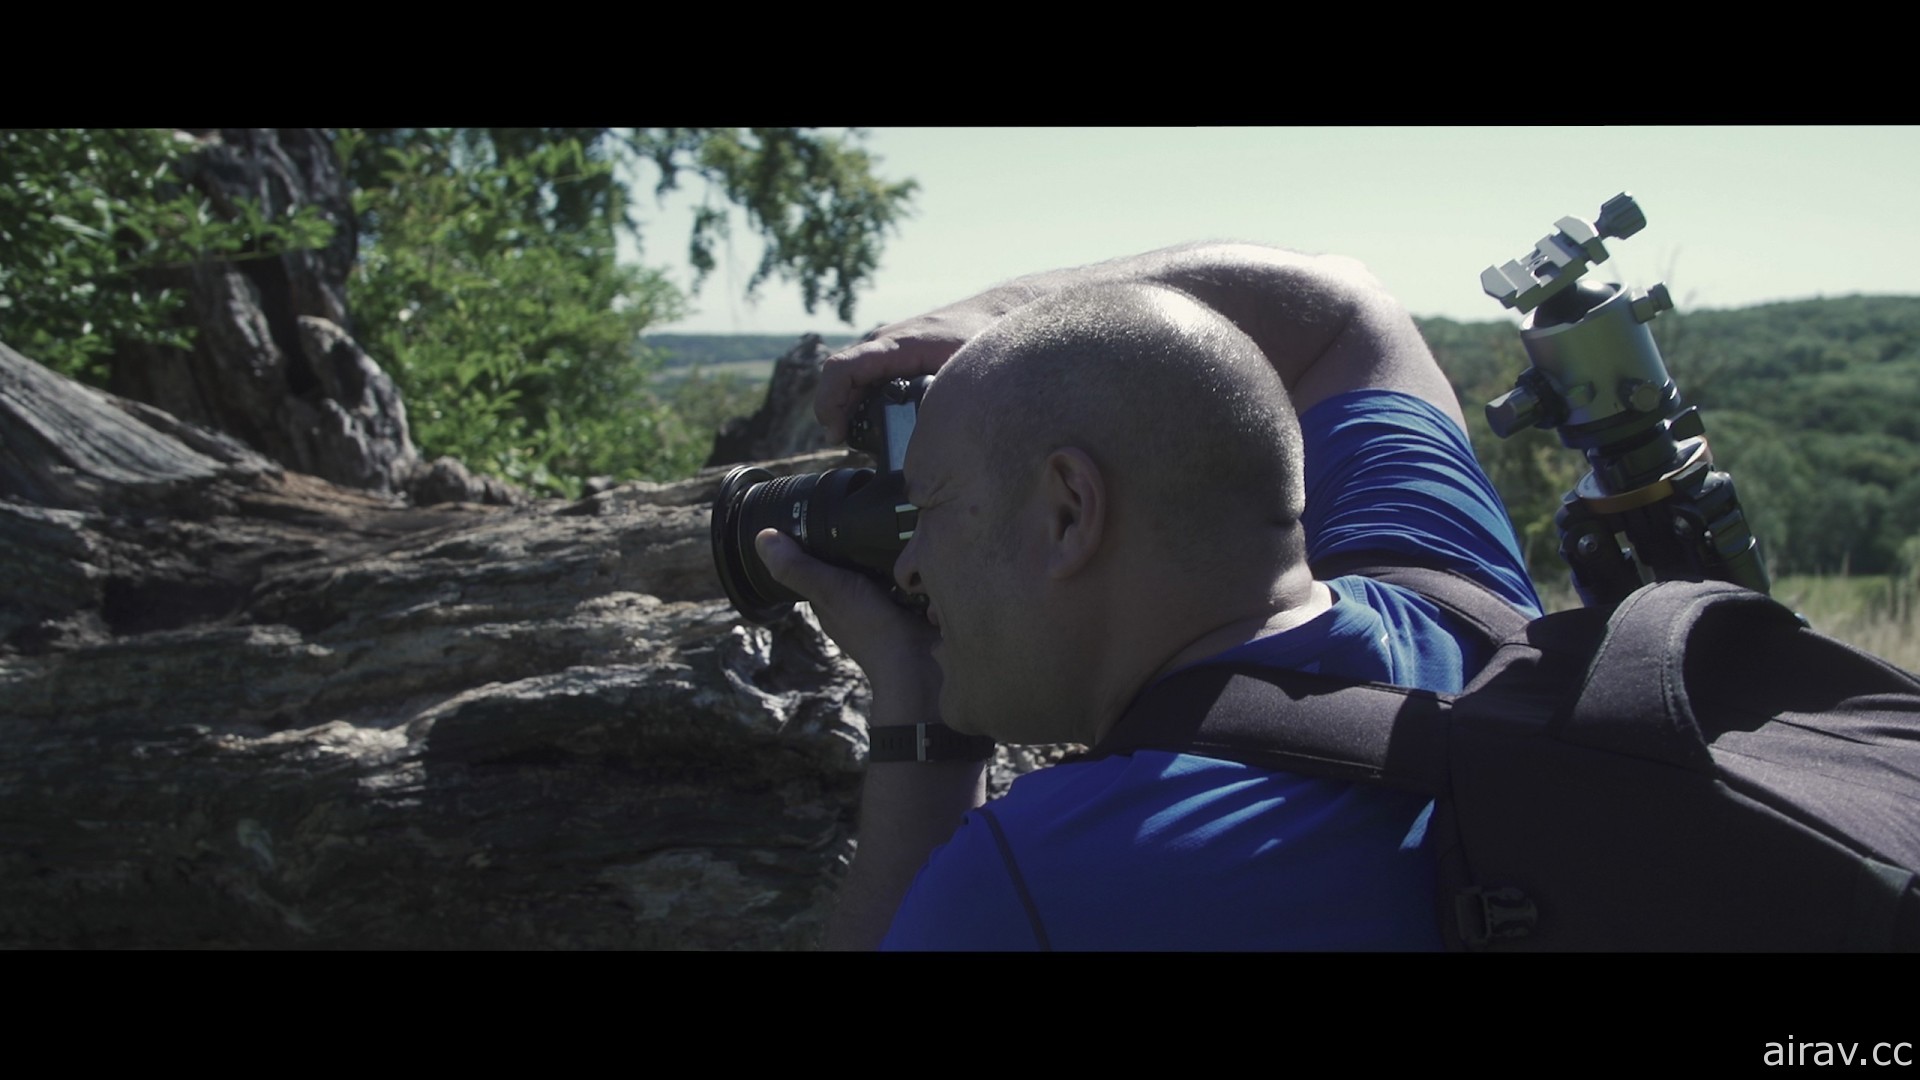 小島工作室與知名攝影師合作打造紀錄片 走上《死亡擱淺》照片模式的探索之旅